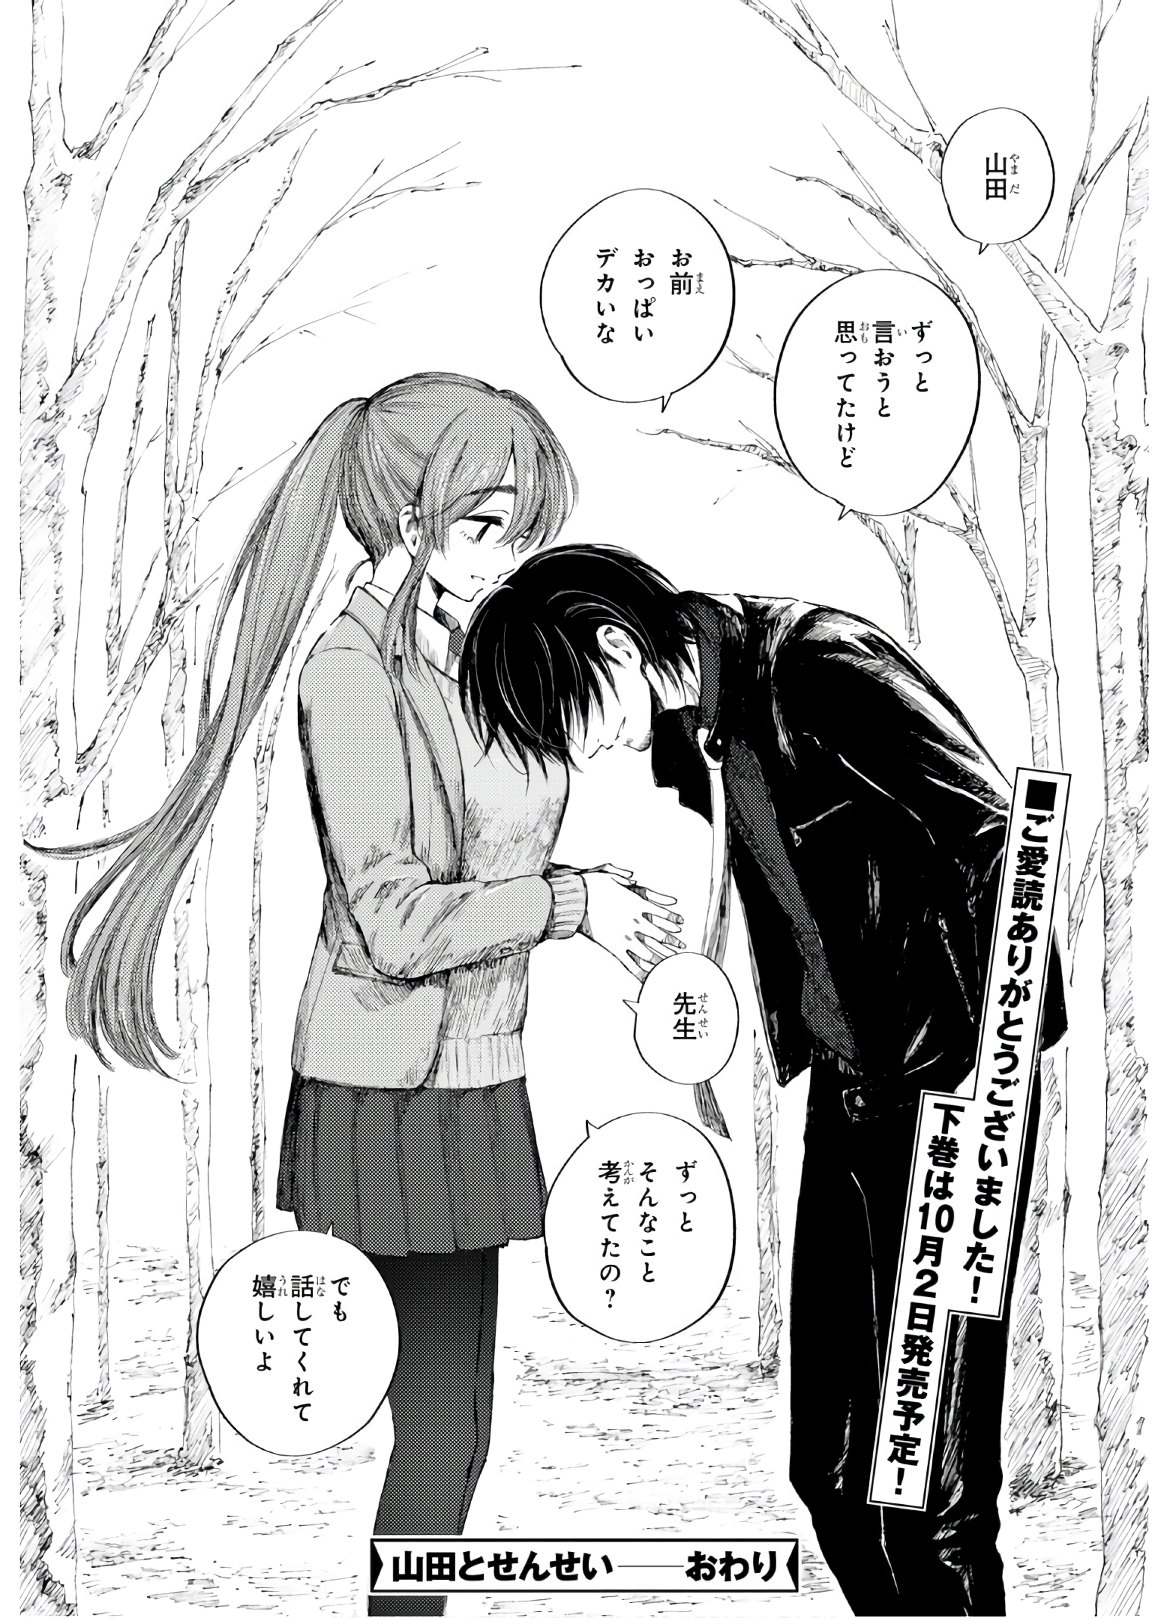 Yamada to sensei - Chapter 10 - Page 30